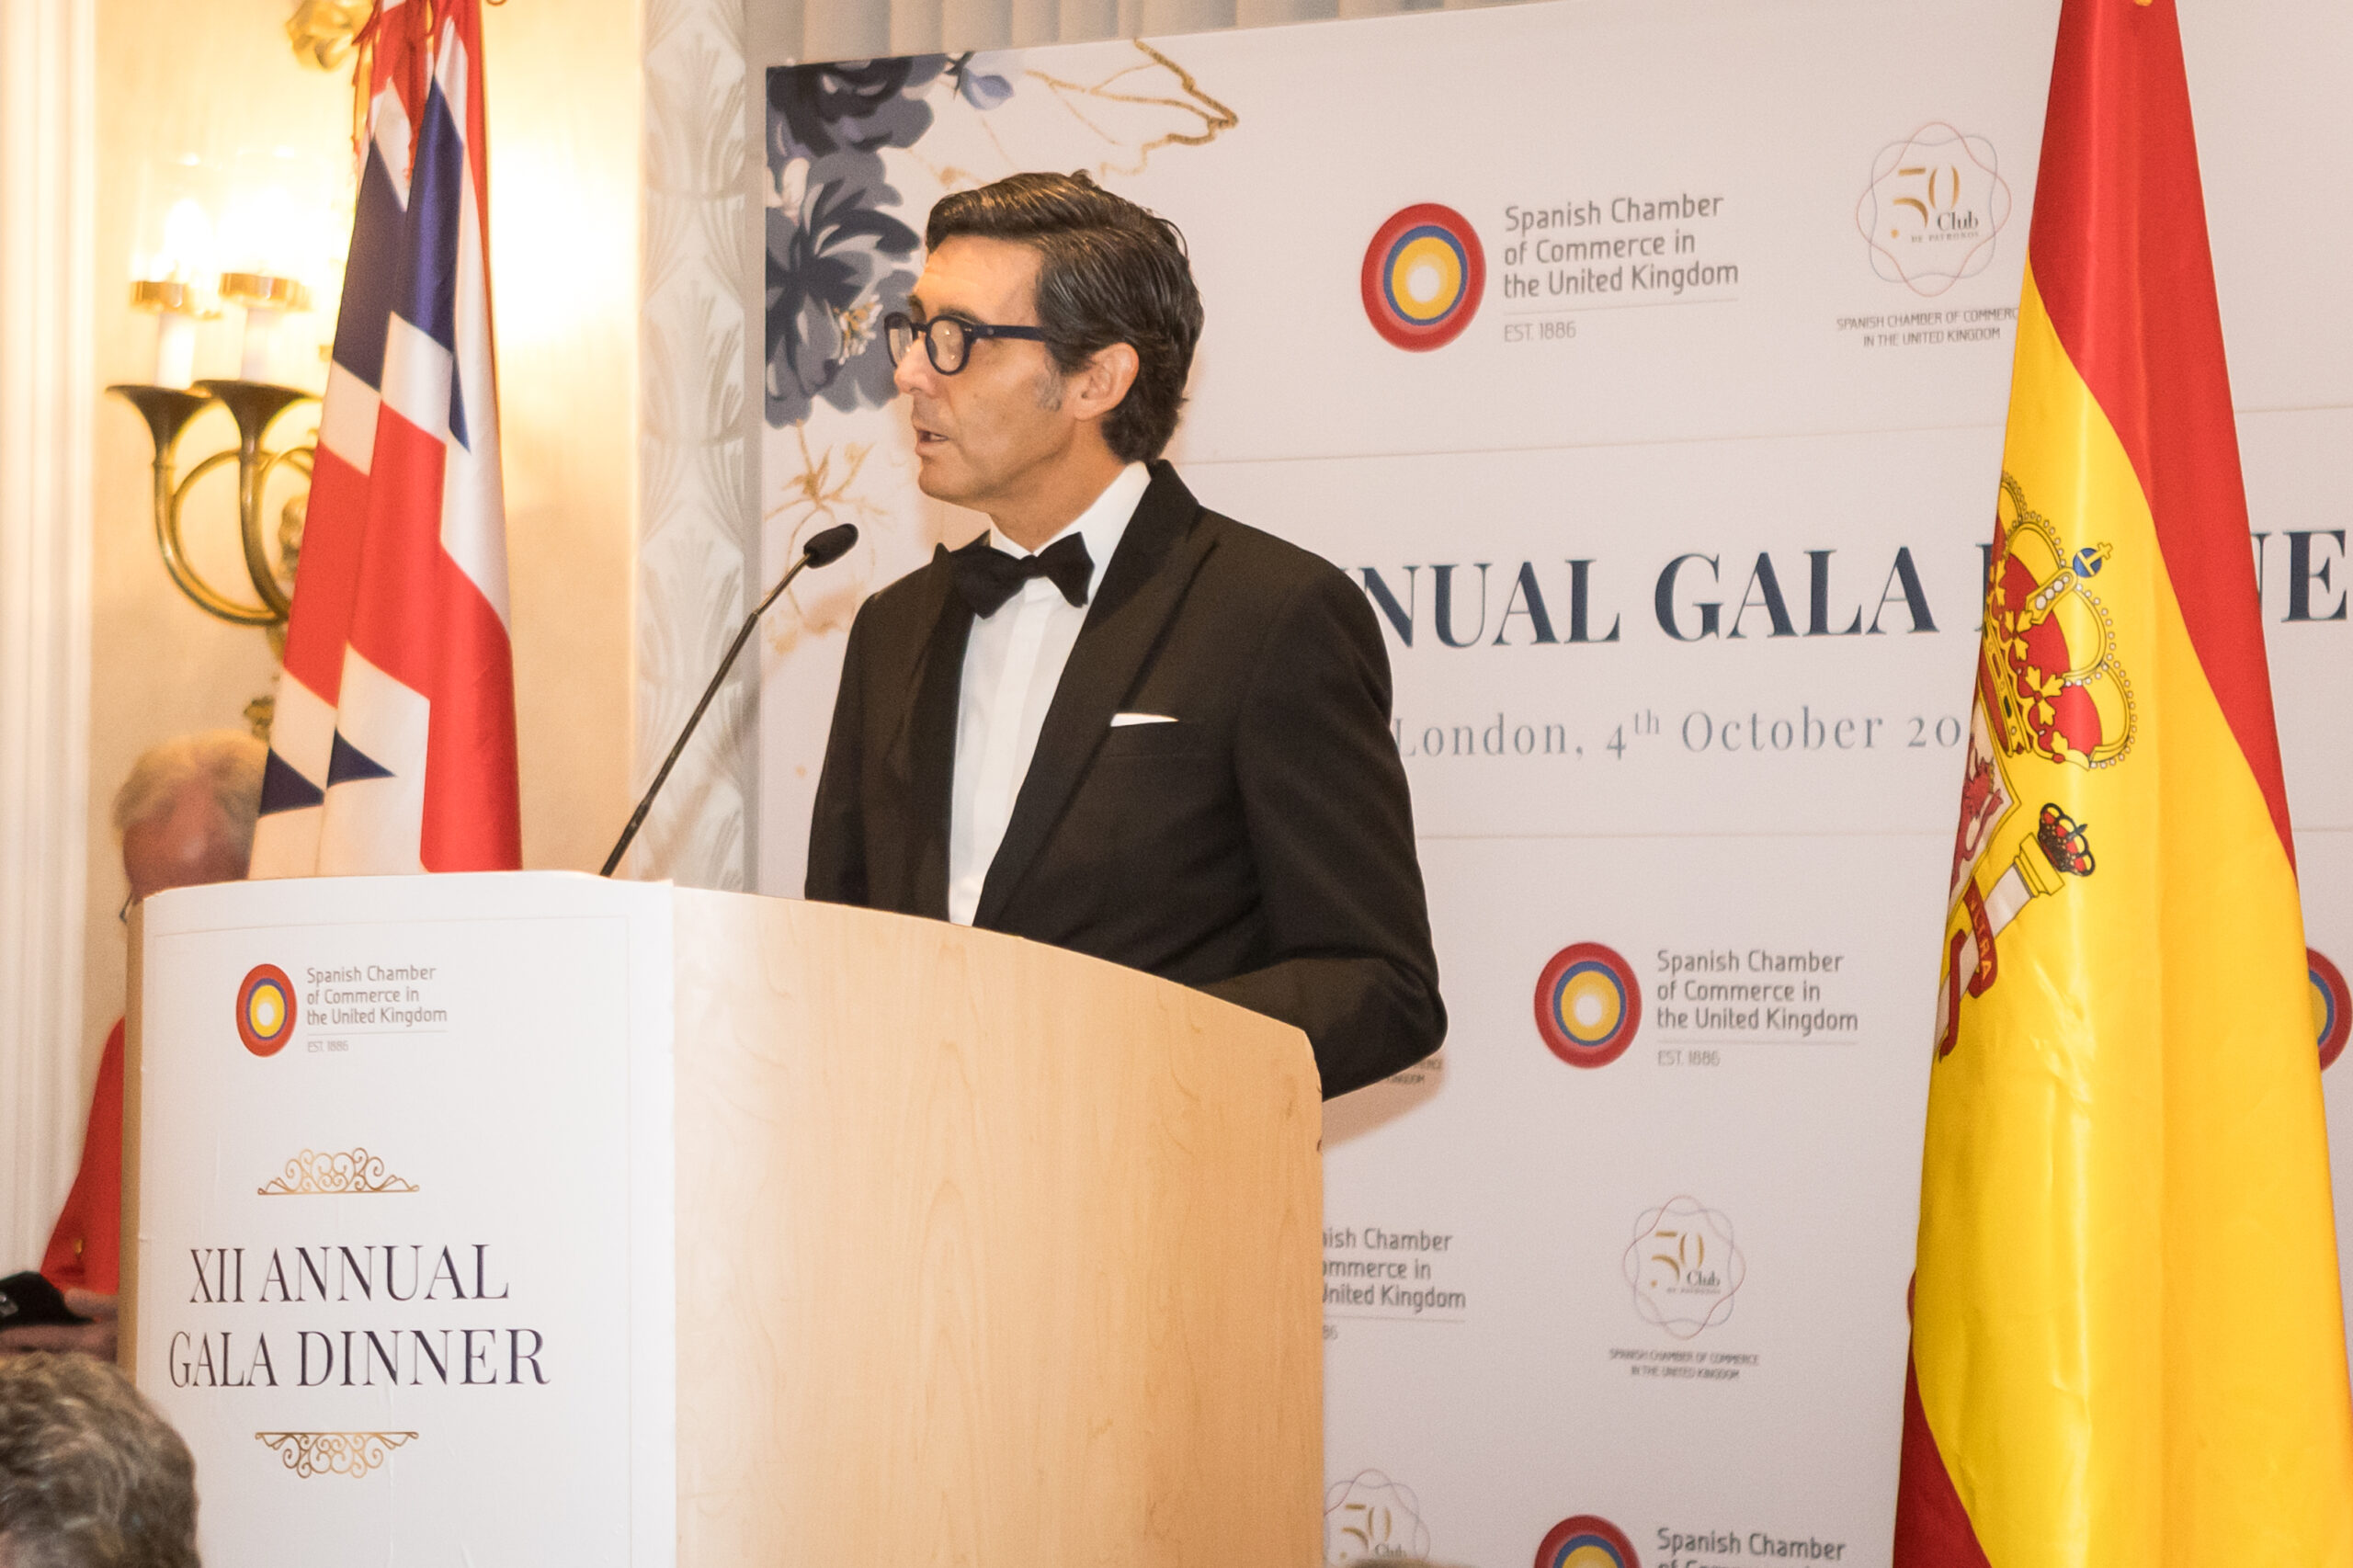 Éxito de la Gala Anual de la Cámara de Comercio de España en el Reino Unido